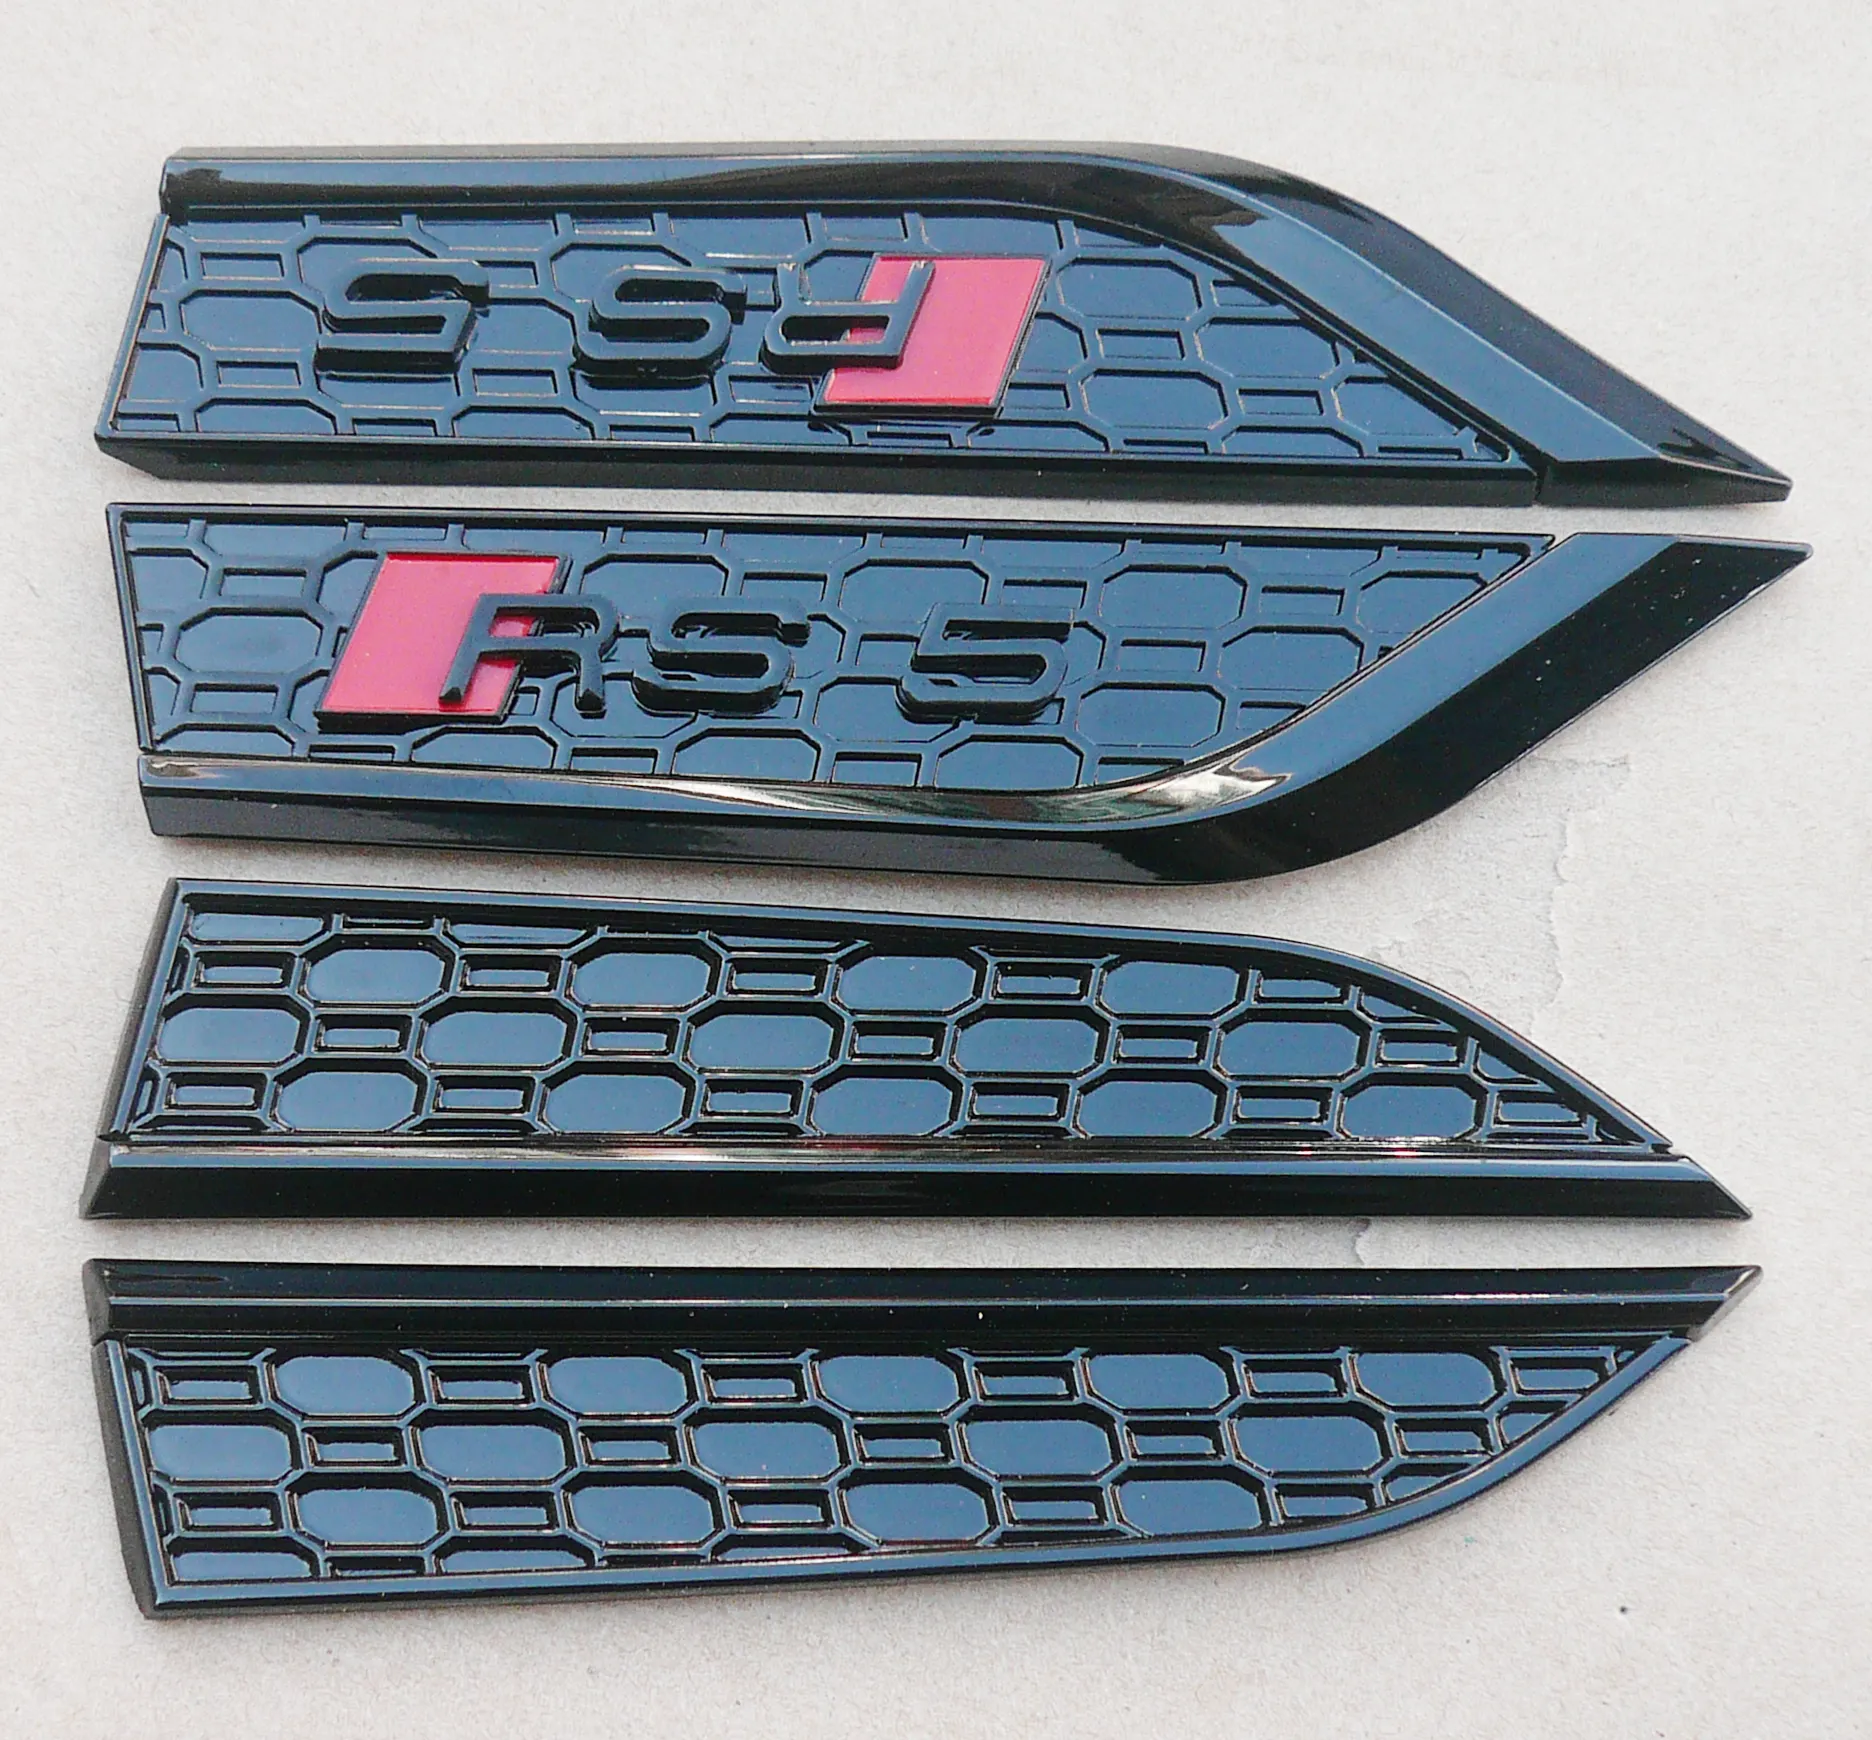 कार संशोधन प्रतीक Rs5 कस्टम डिजाइन कार प्रतीक स्टिकर, काले रंग और चांदी का रंग